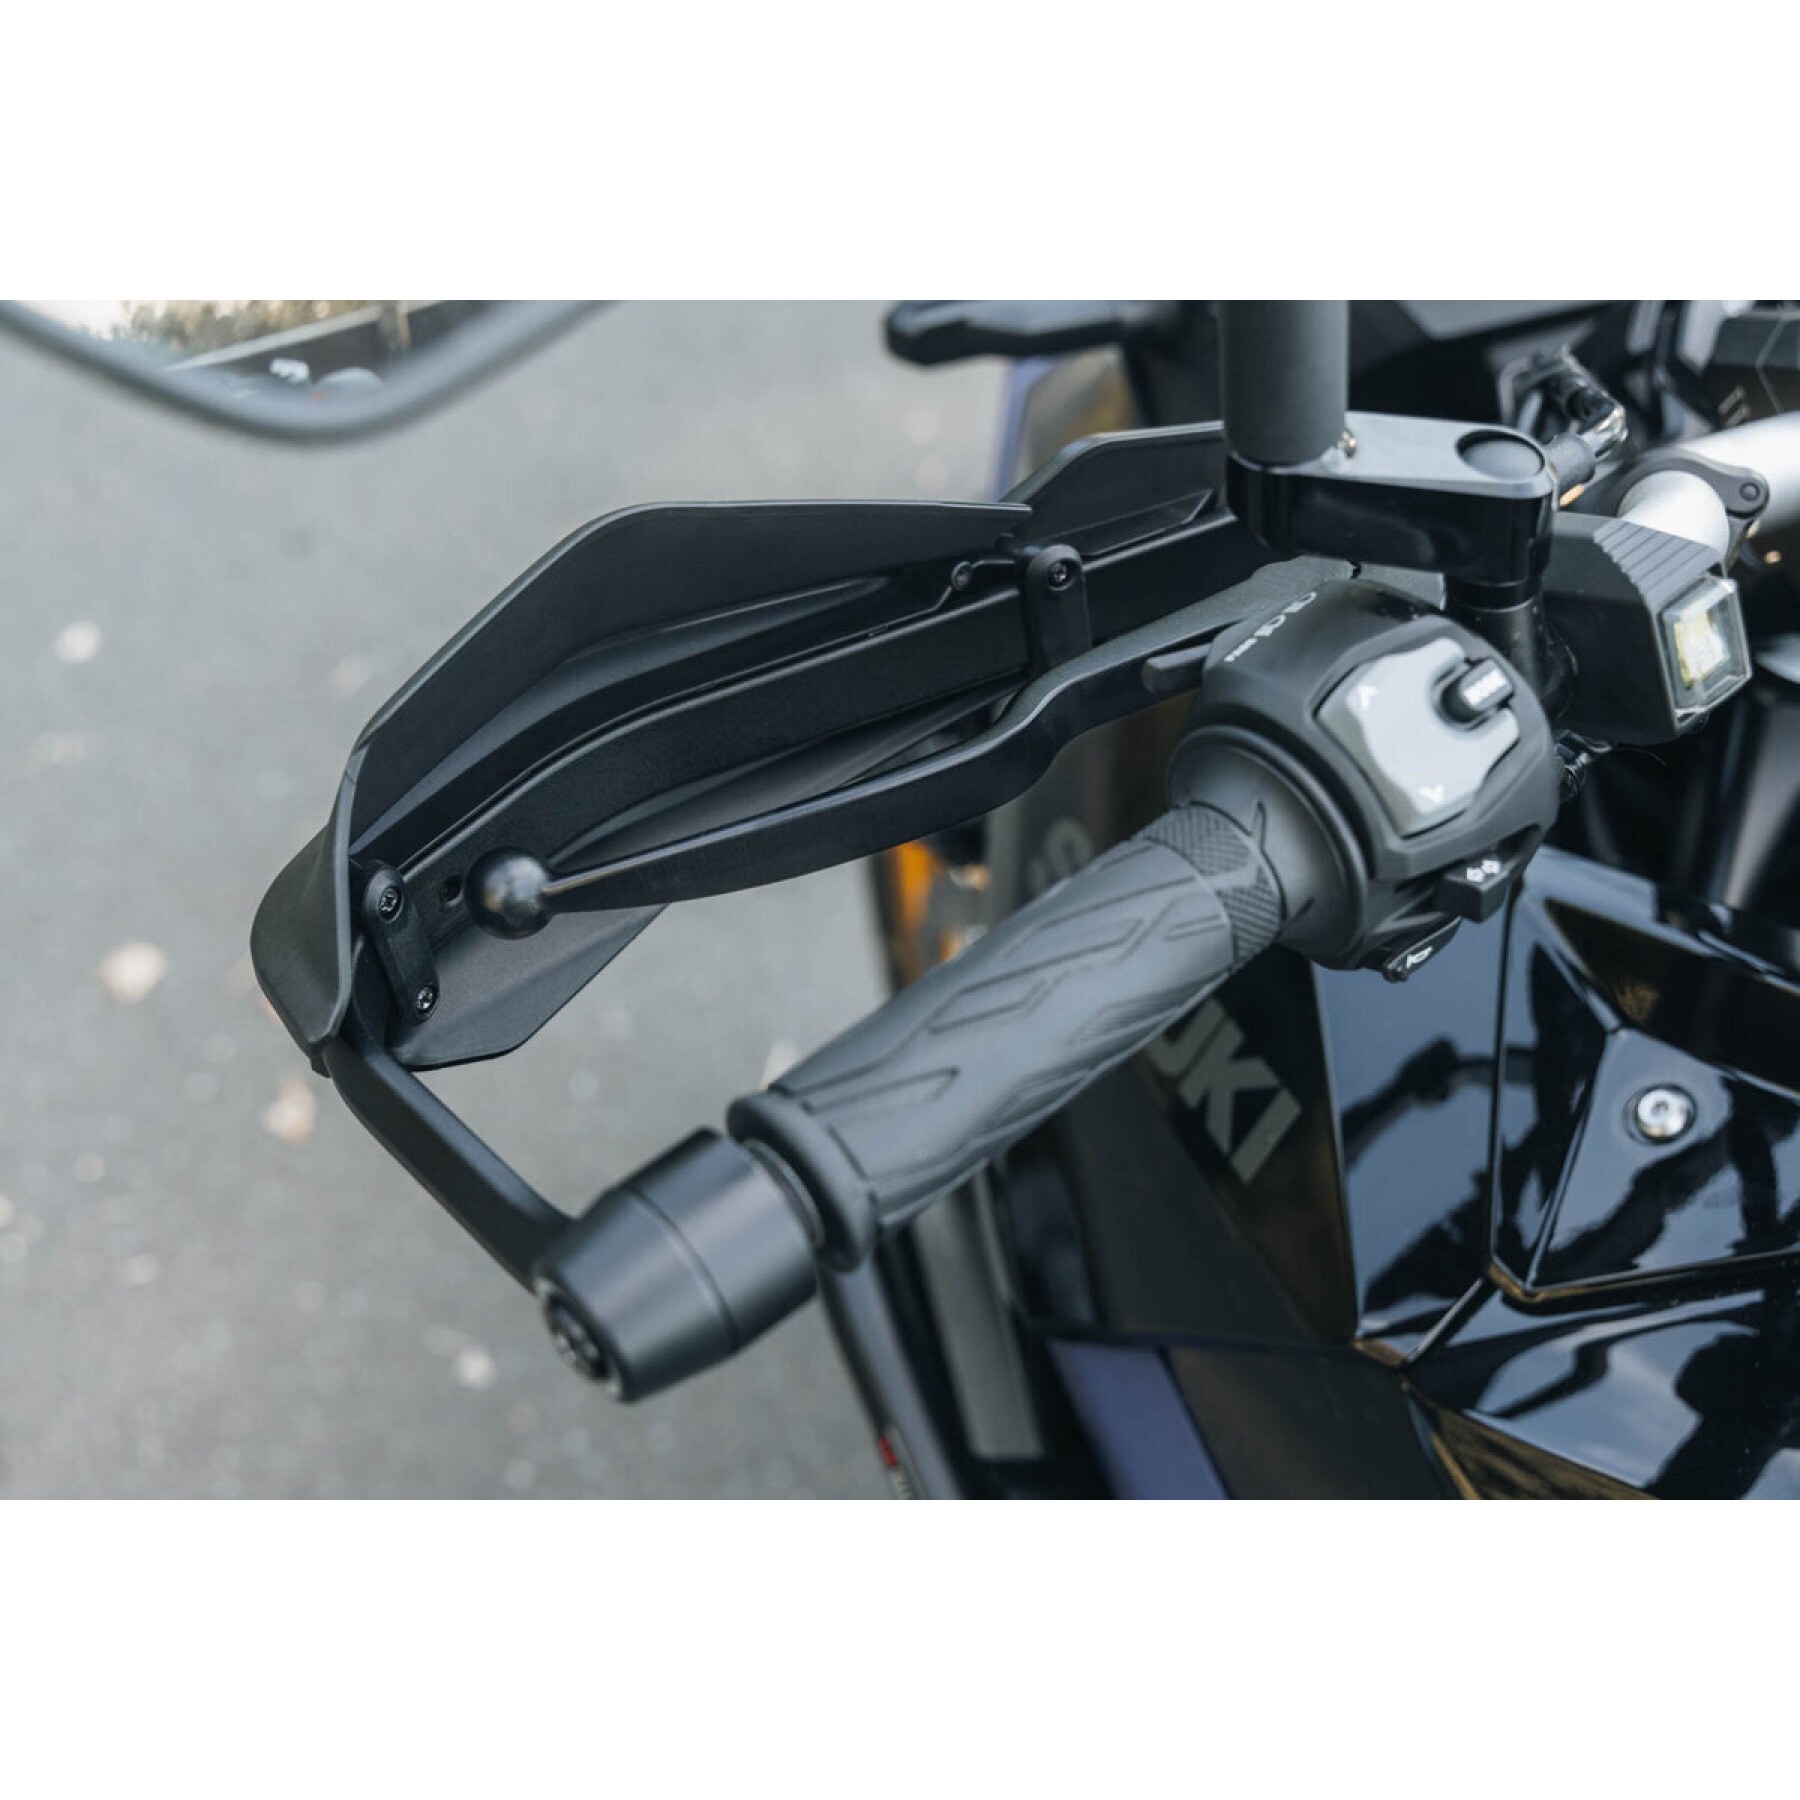 Kit de protecção das mãos para motos SW-Motech Adventure